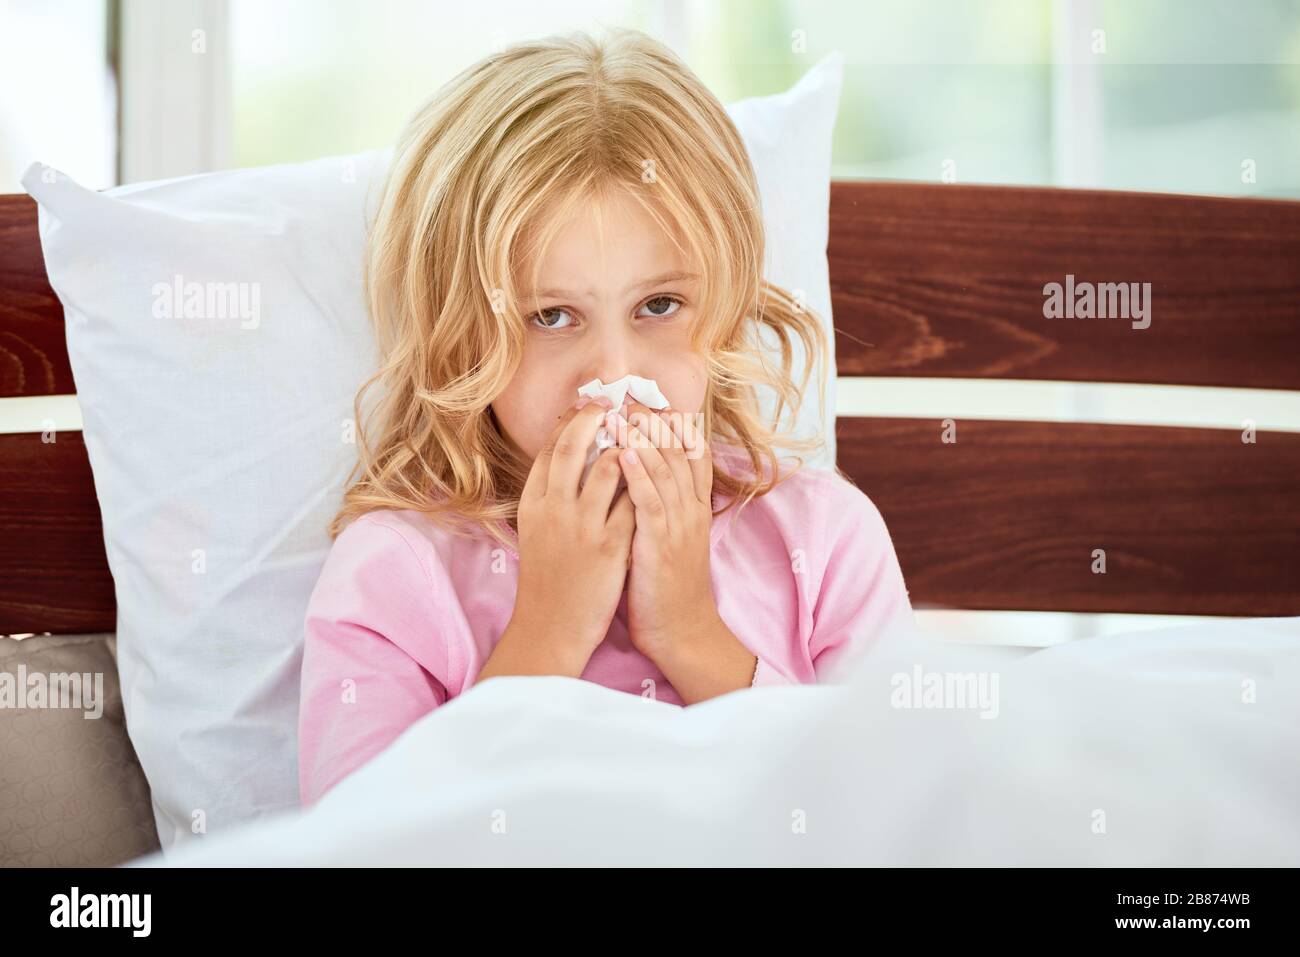 Portrait des kleinen Mädchens mit runniger Nase, das an Kälte oder Grippe leidet, während es zu Hause im Bett liegt. Viruserkrankung. Coronavirus Konzept. Konzept für das Gesundheitswesen Stockfoto